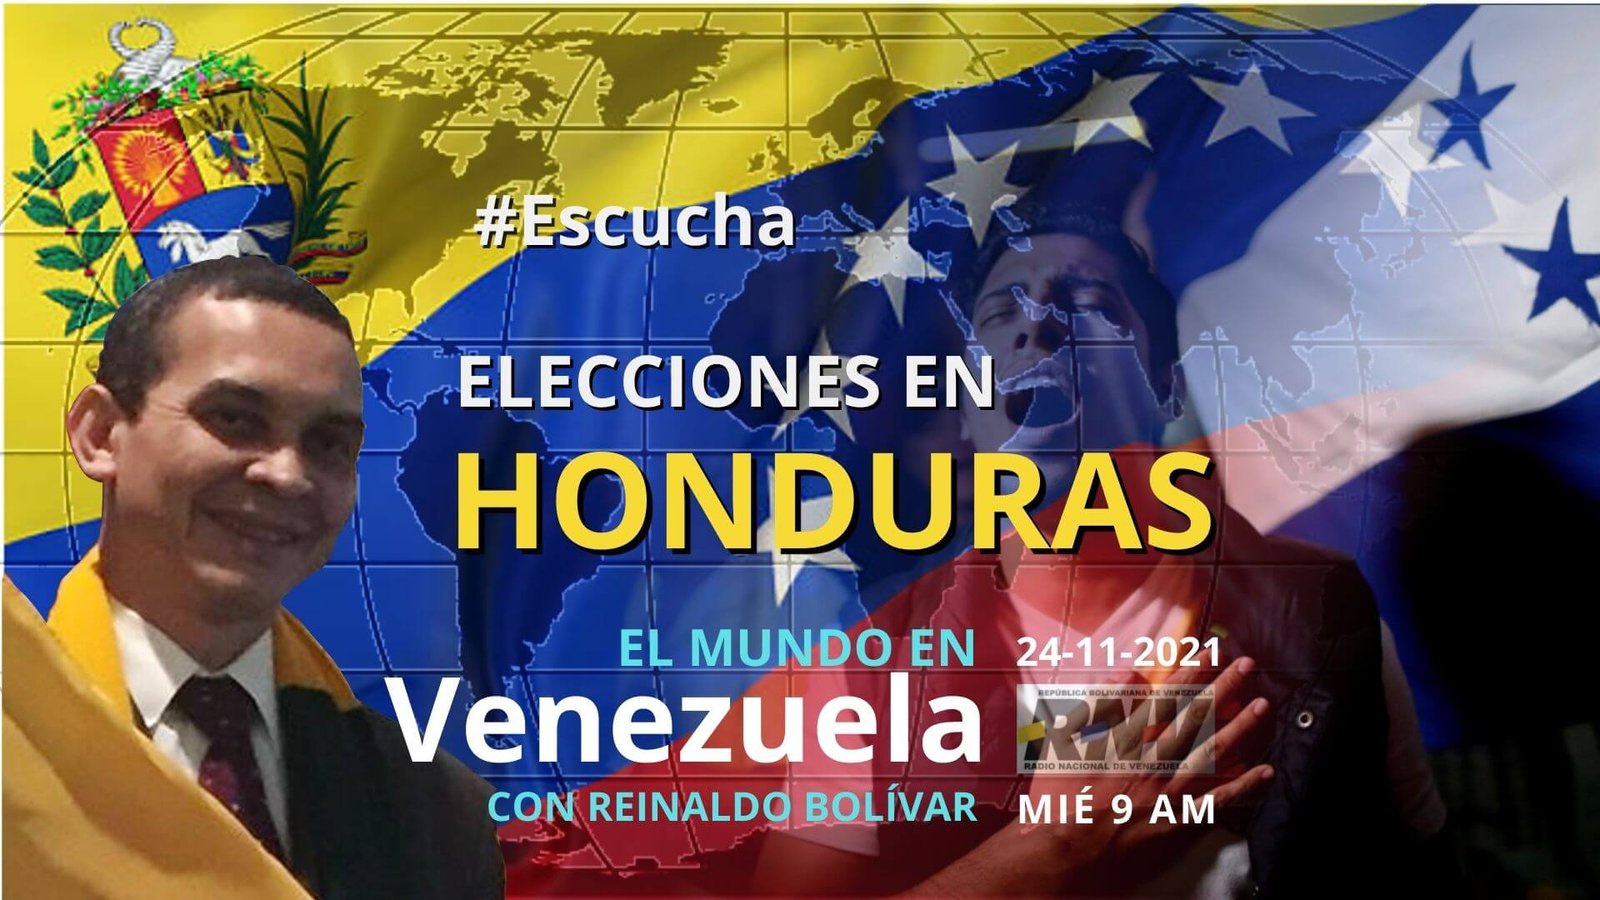 - Escucha El Mundo en Venezuela -